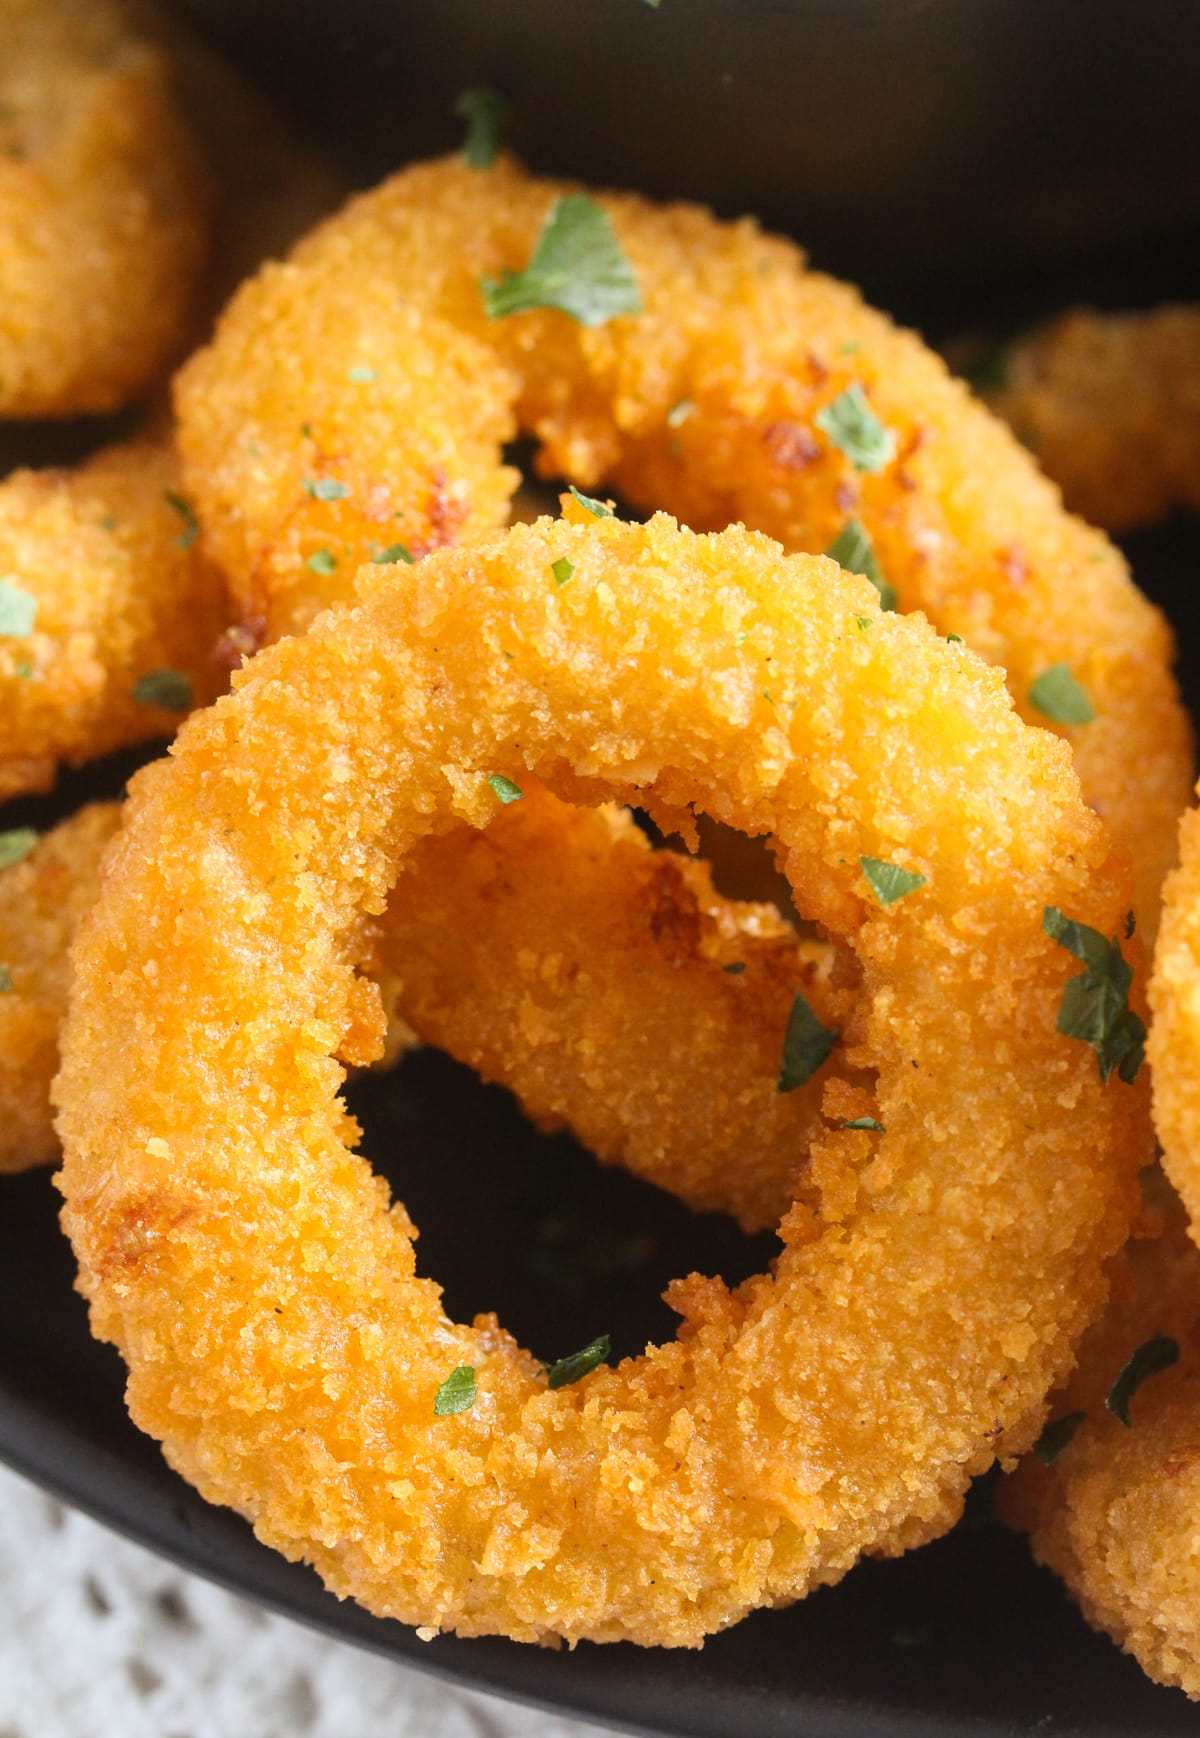 close up of a golden fried calamari ring.